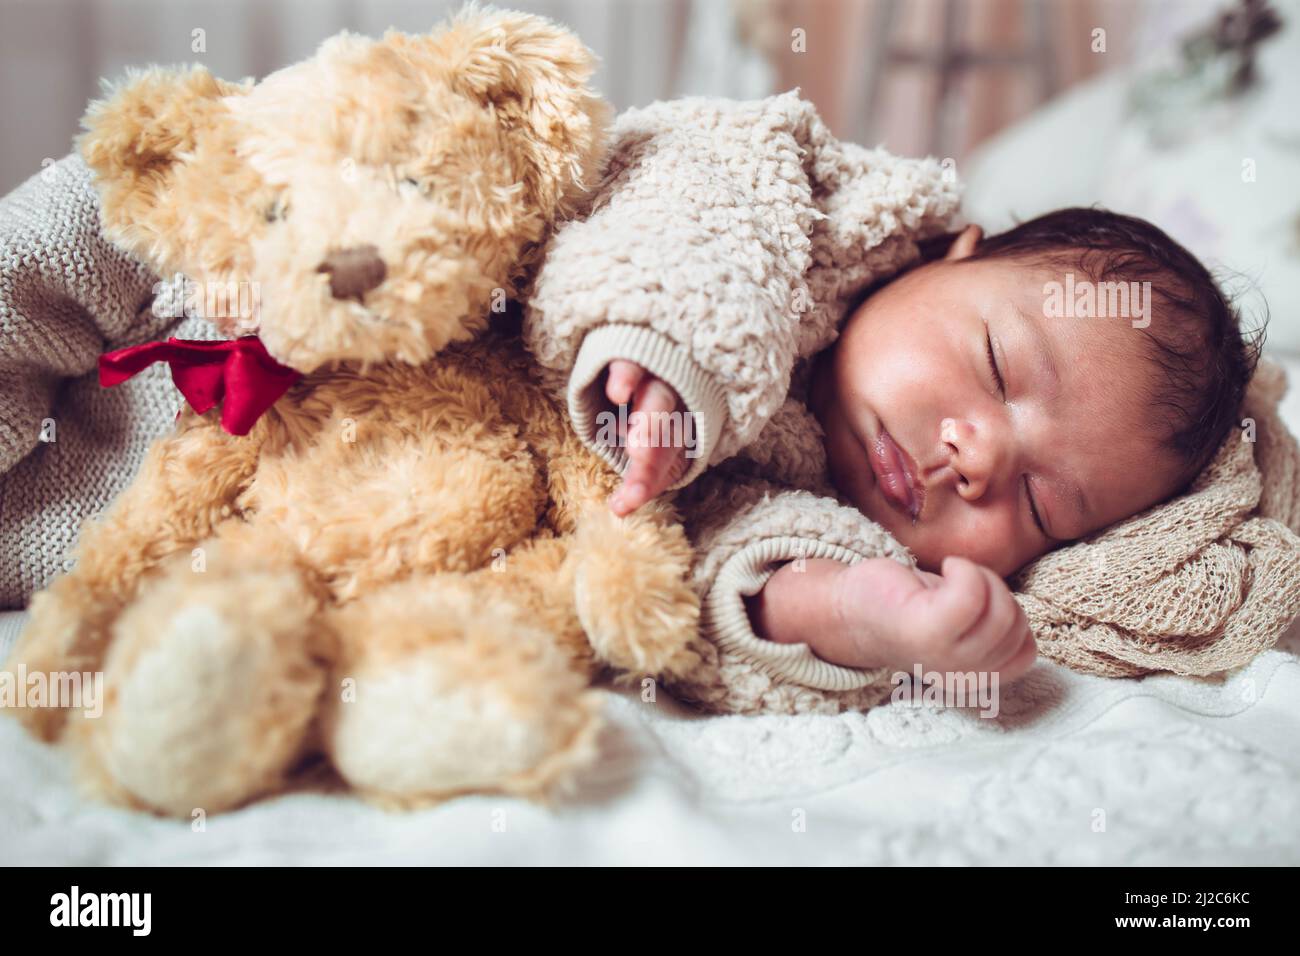 Bebé Recién Nacido Que Duerme Con El Oso De Peluche Foto de archivo -  Imagen de newborn, gente: 77952934